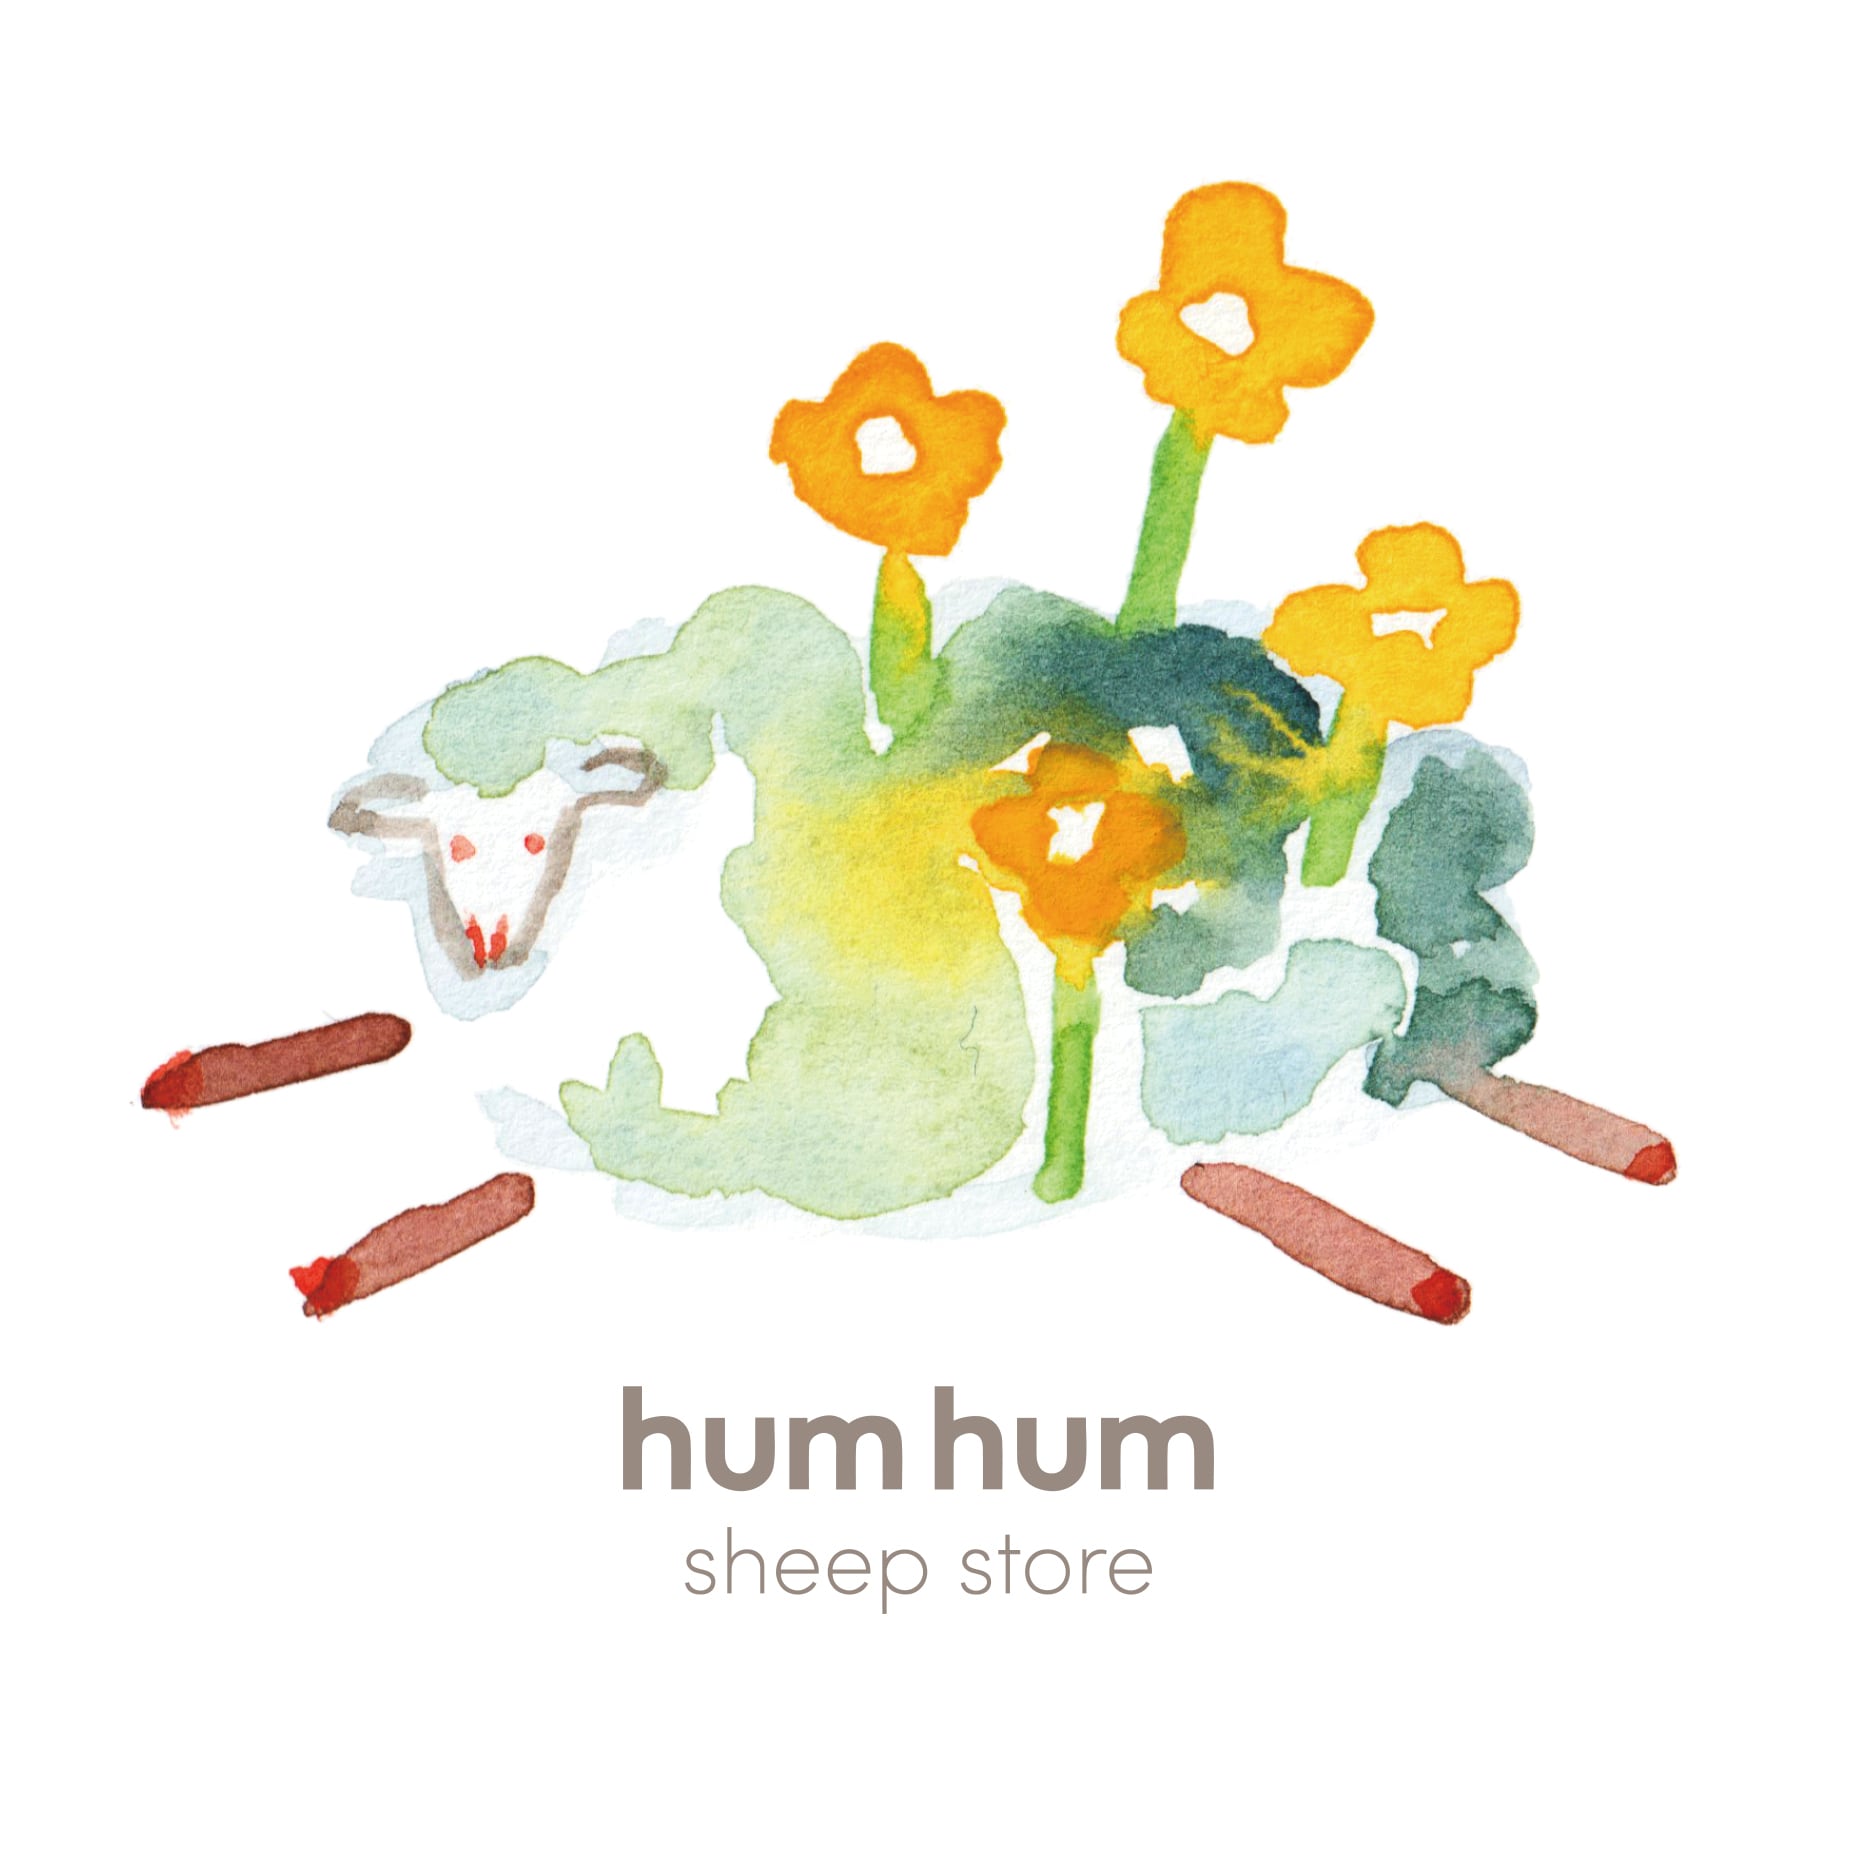 hum hum sheep store